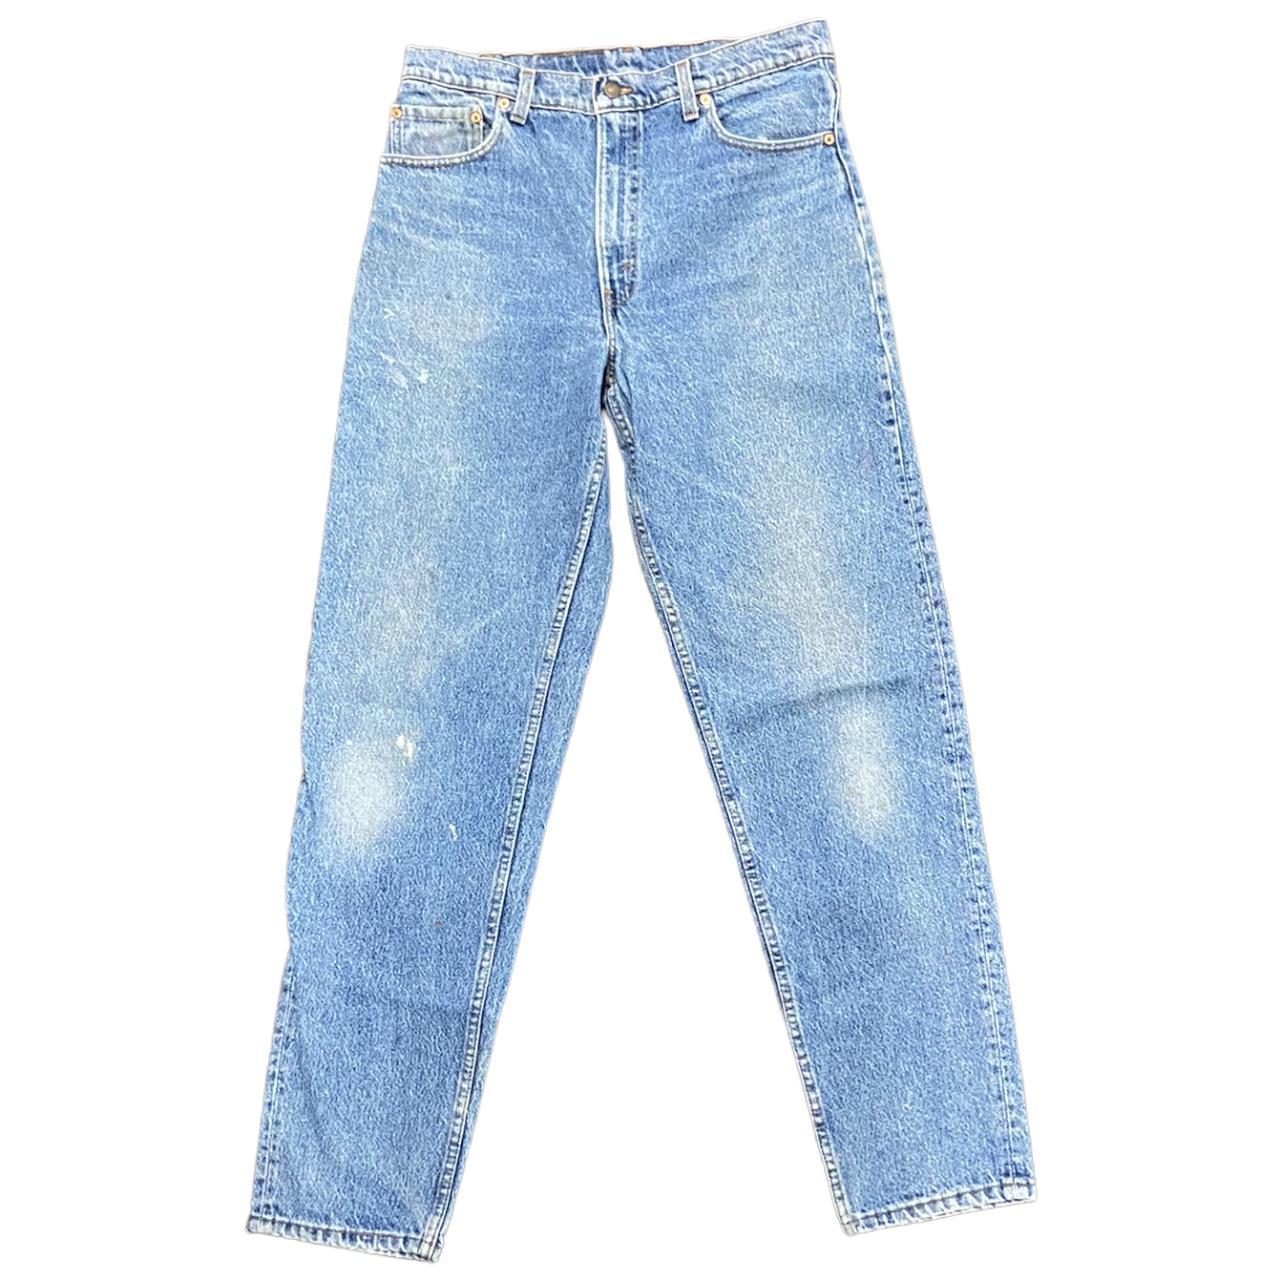 Levi's Men's Blue Jeans